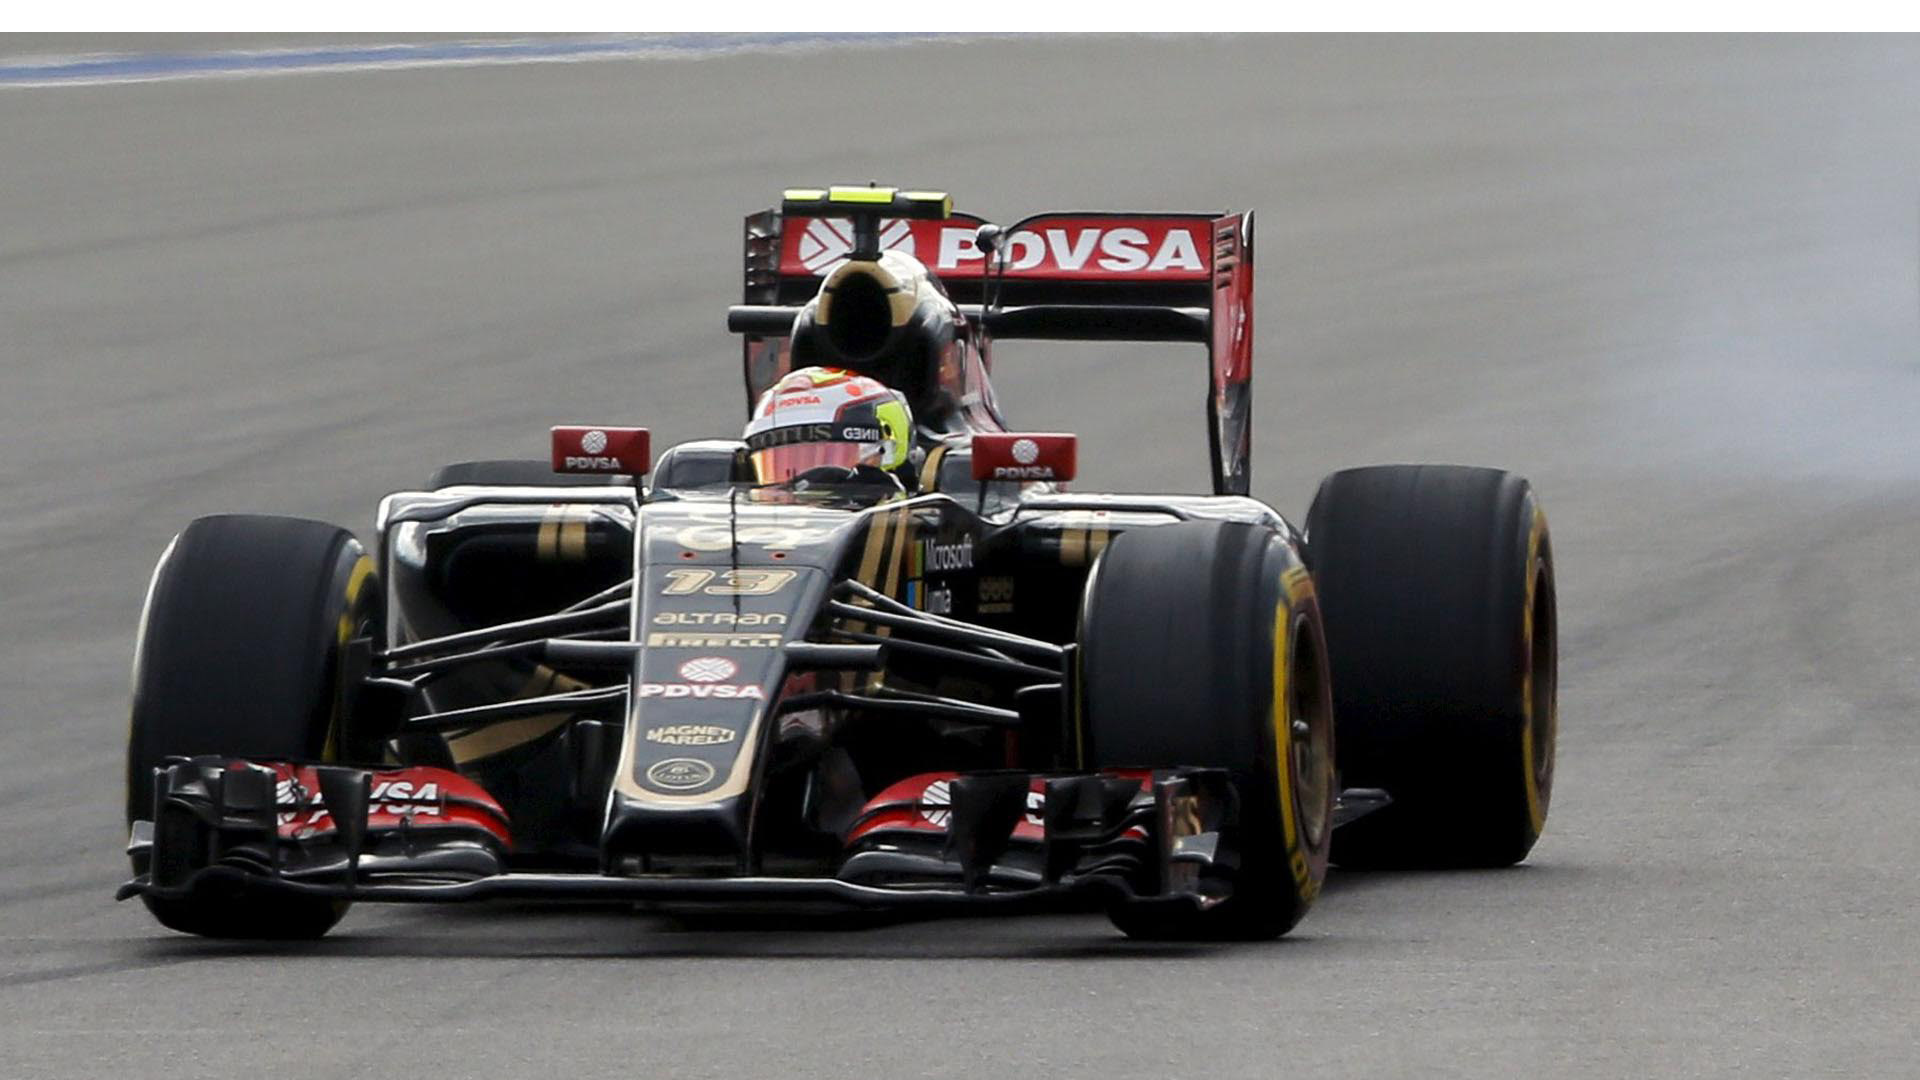 En los resultados del pole position Maldonado llegó de 15 mientras que en el 1° puesto llegó Nico Rosberg